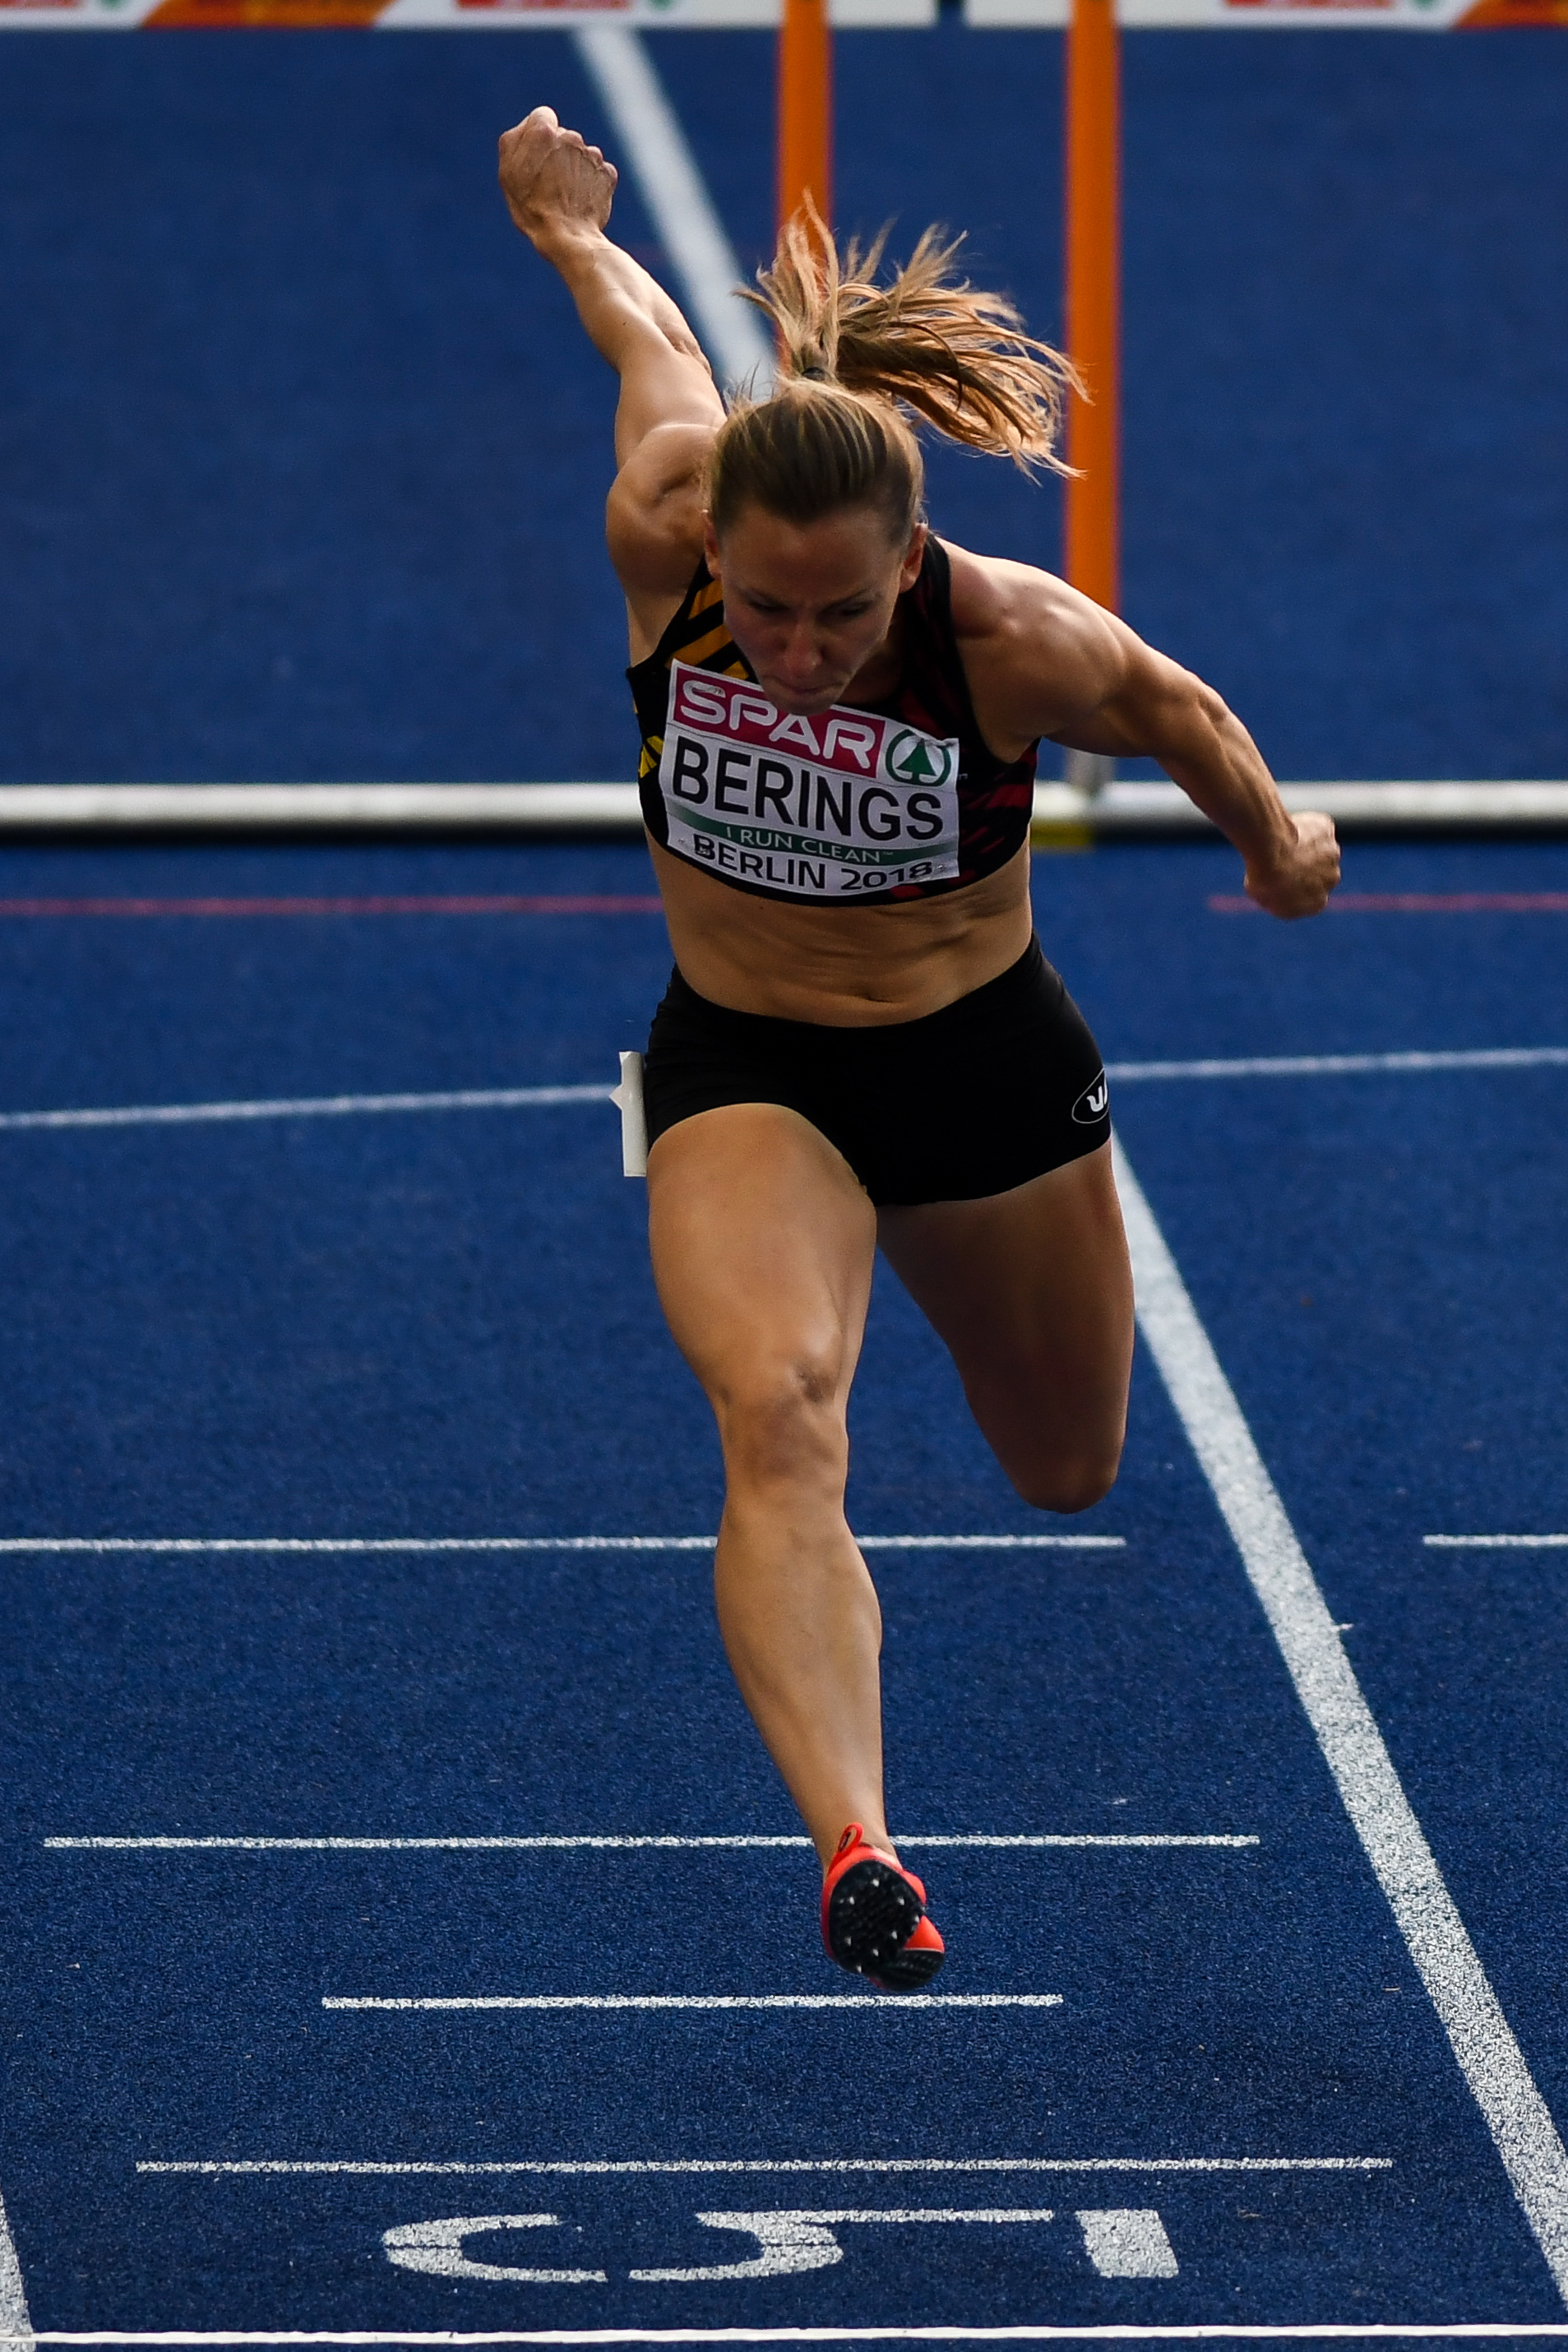 Eline Berings 100mh Berlijn 2018